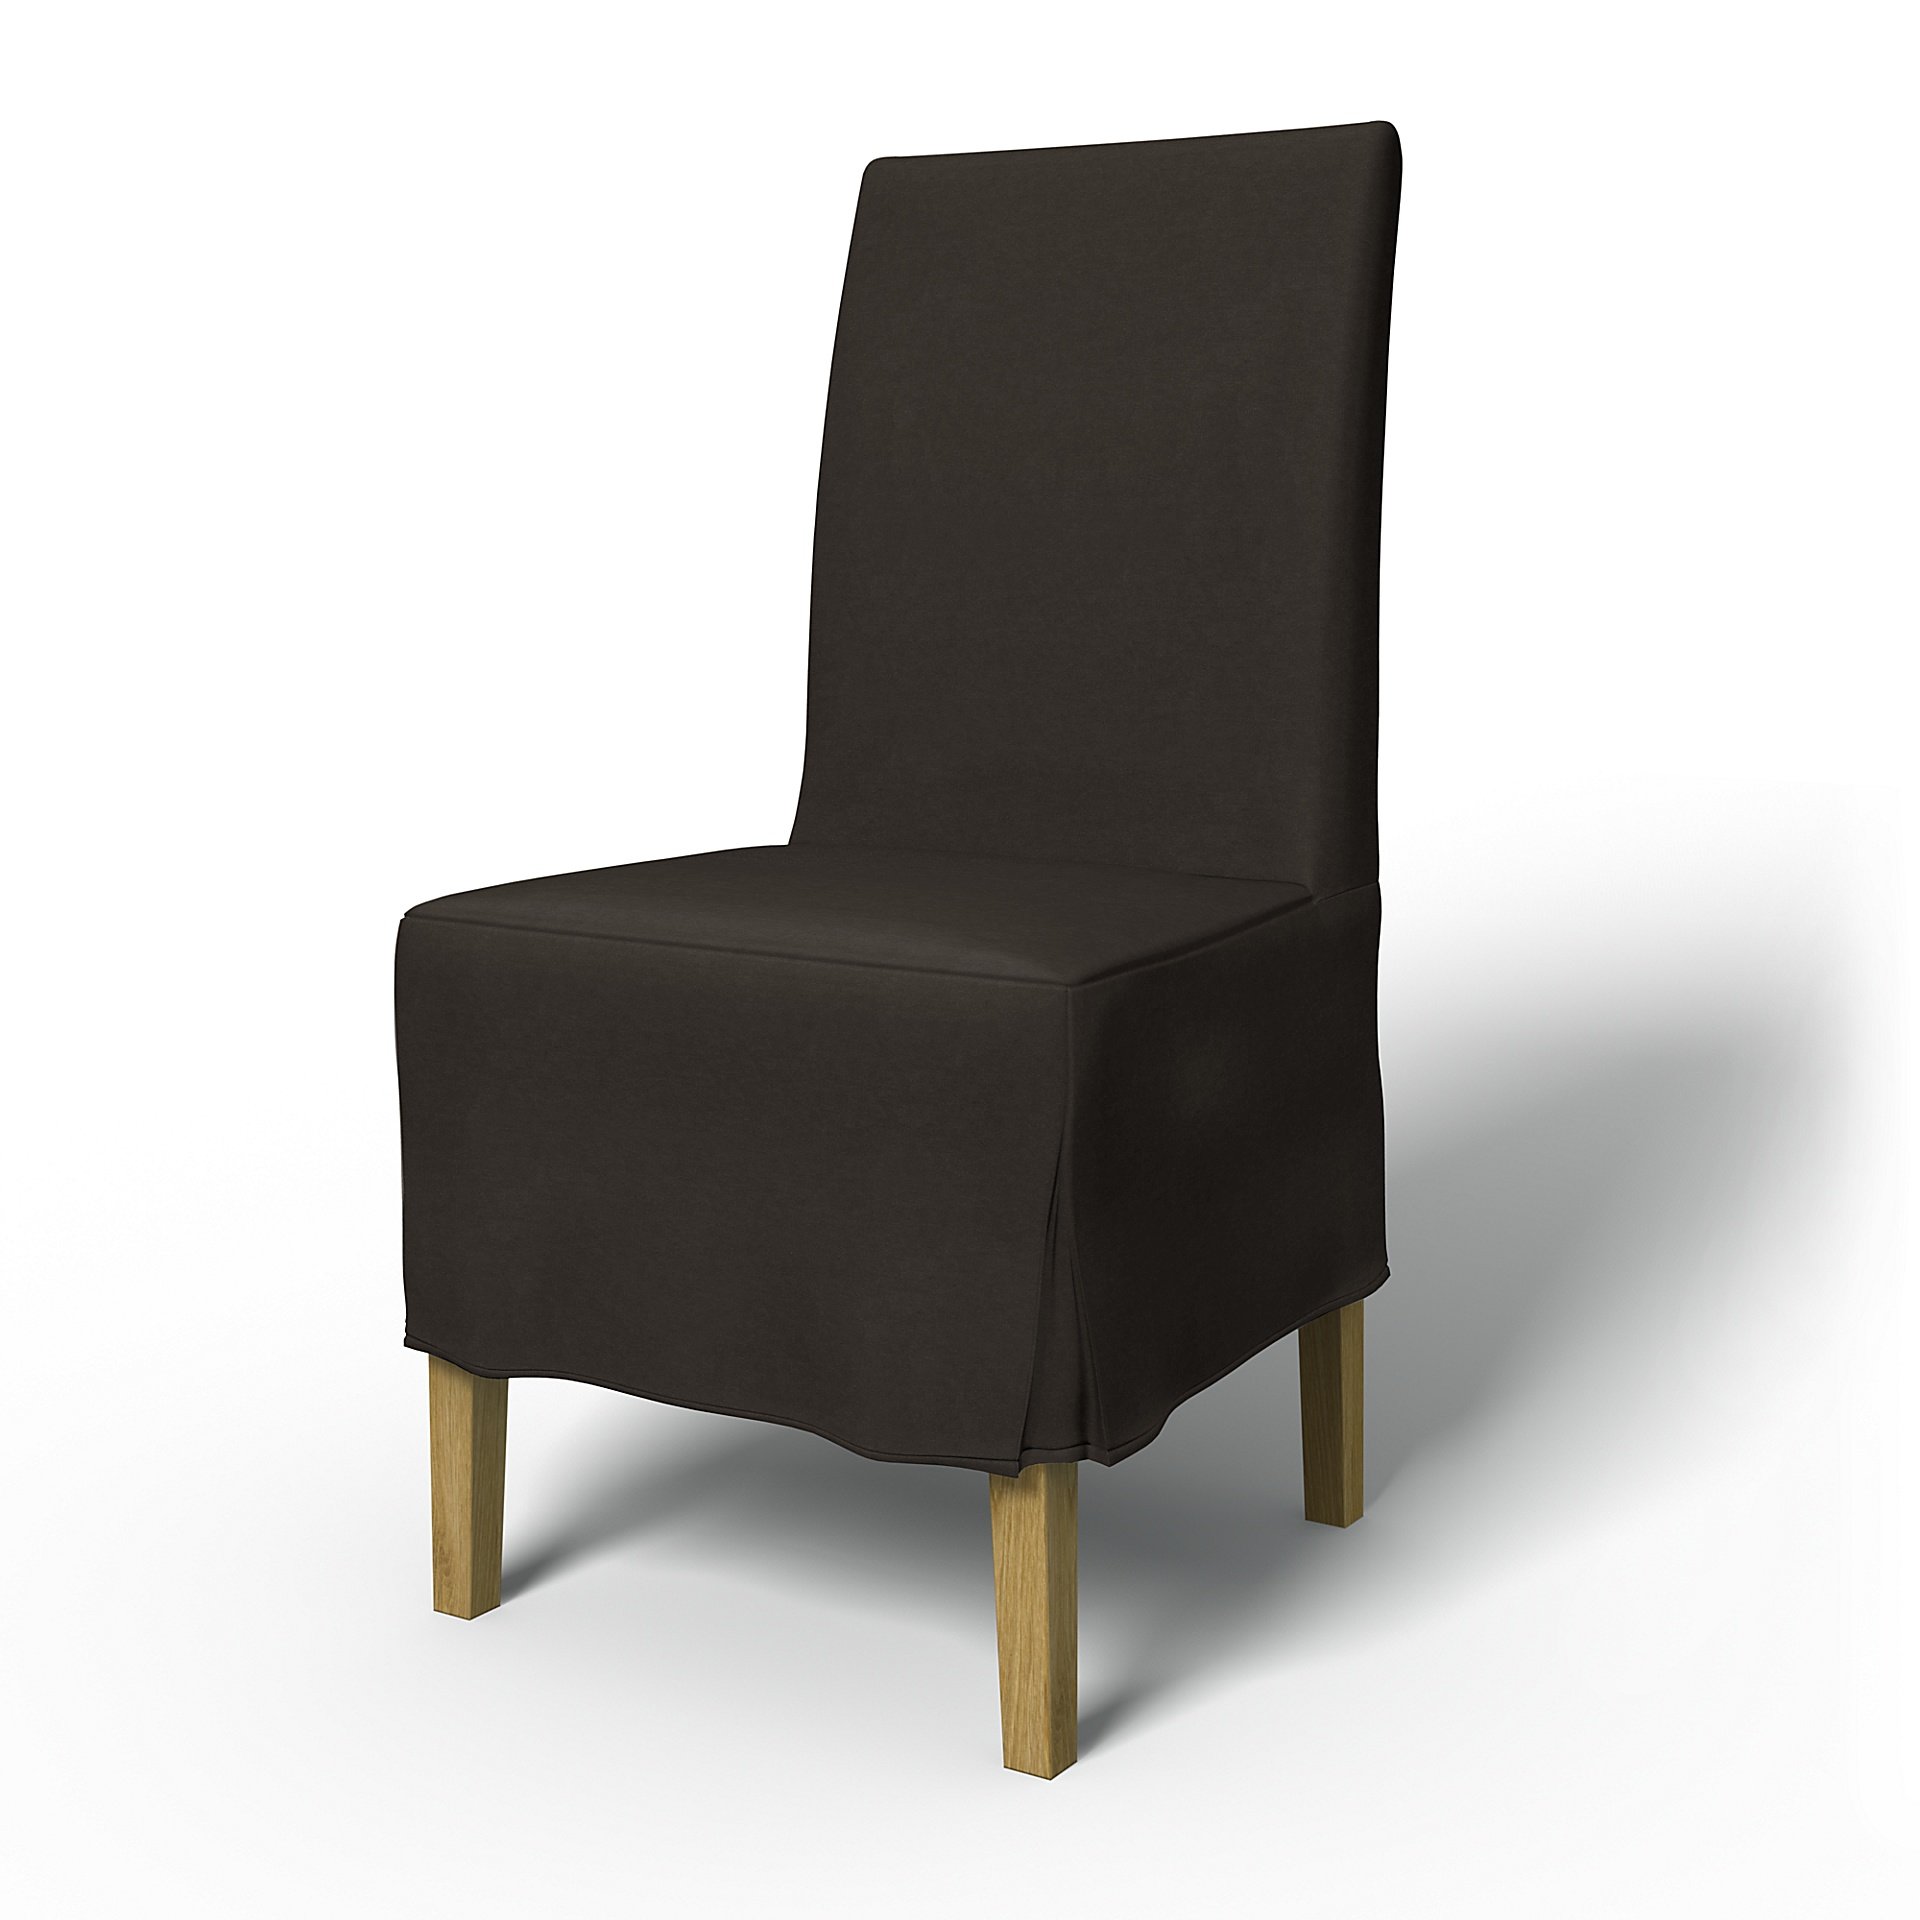 IKEA - Henriksdal Dining Chair Cover Medium skirt with Box Pleat (Standard model), Licorice, Velvet 